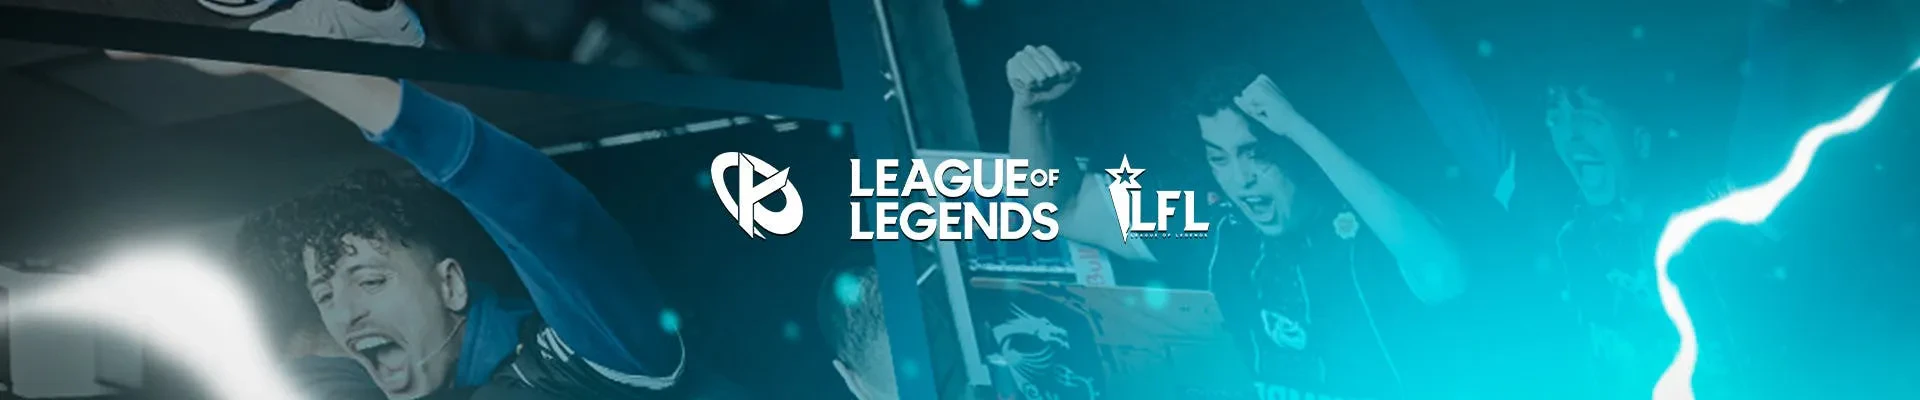 header kcorp league of legends